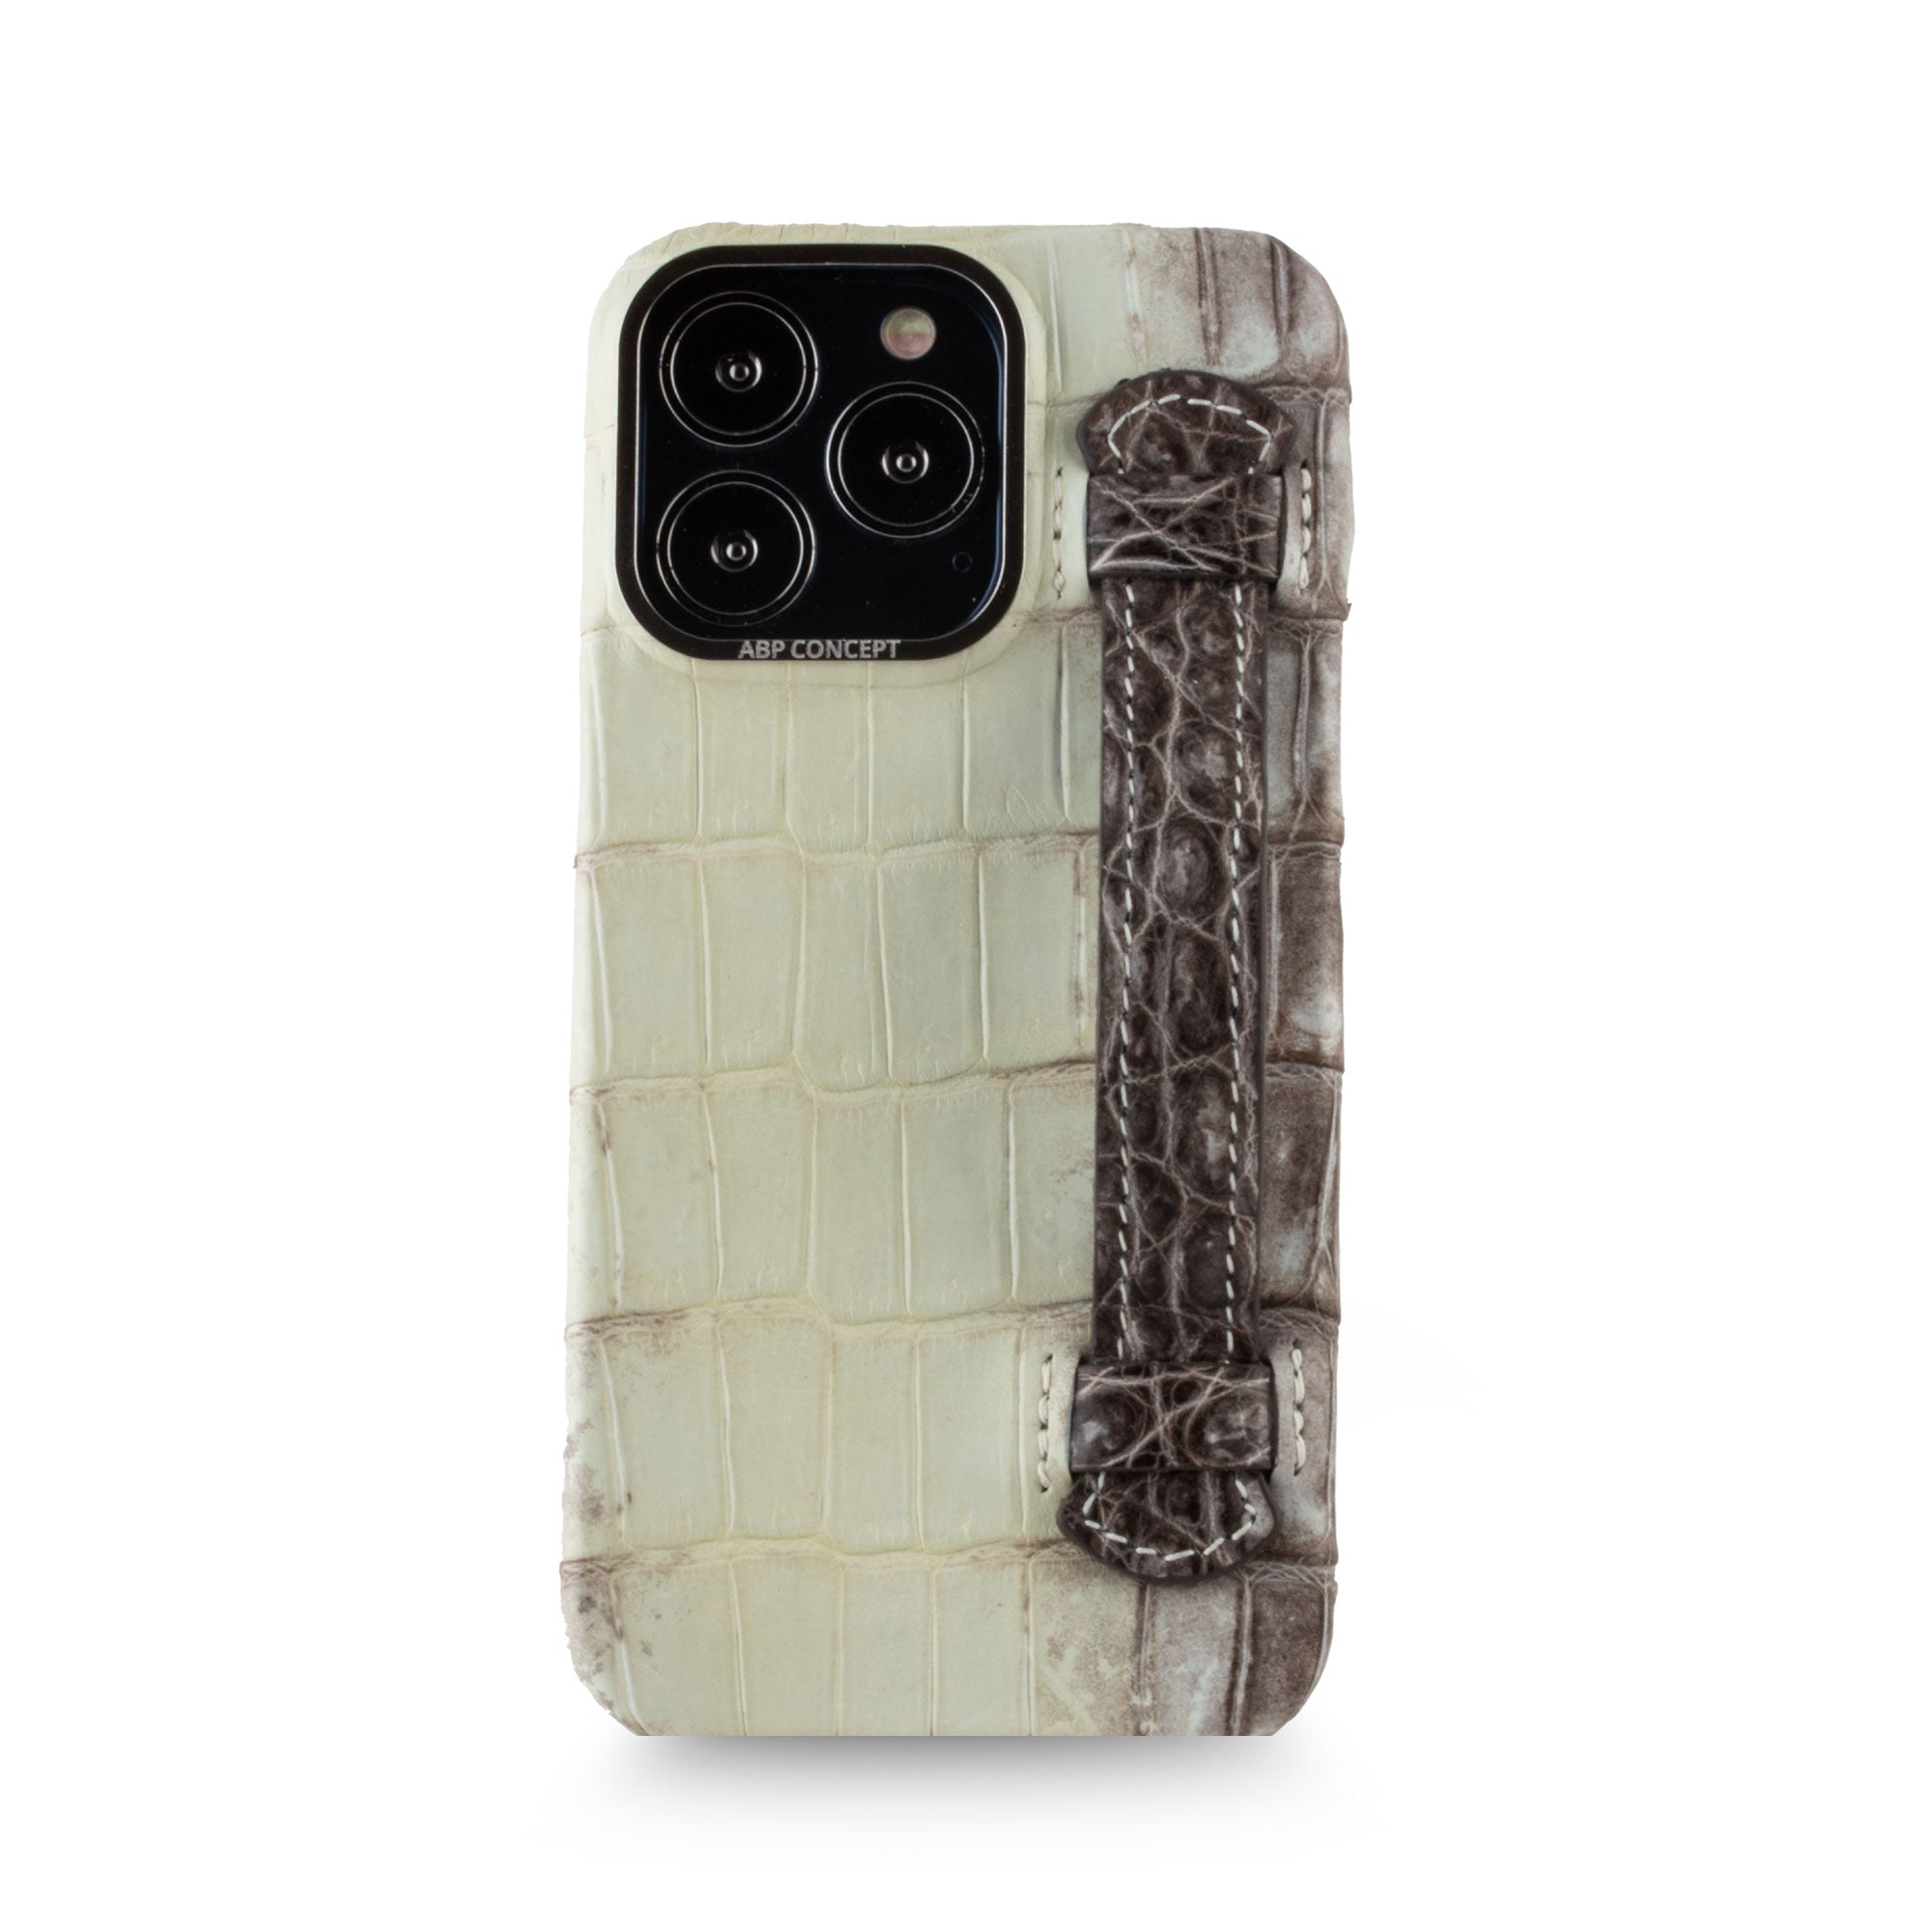 Vente exclusive - Coque cuir "strap case" Himalaya pour iPhone 13 Pro - Crocodile Himalaya foncé 1